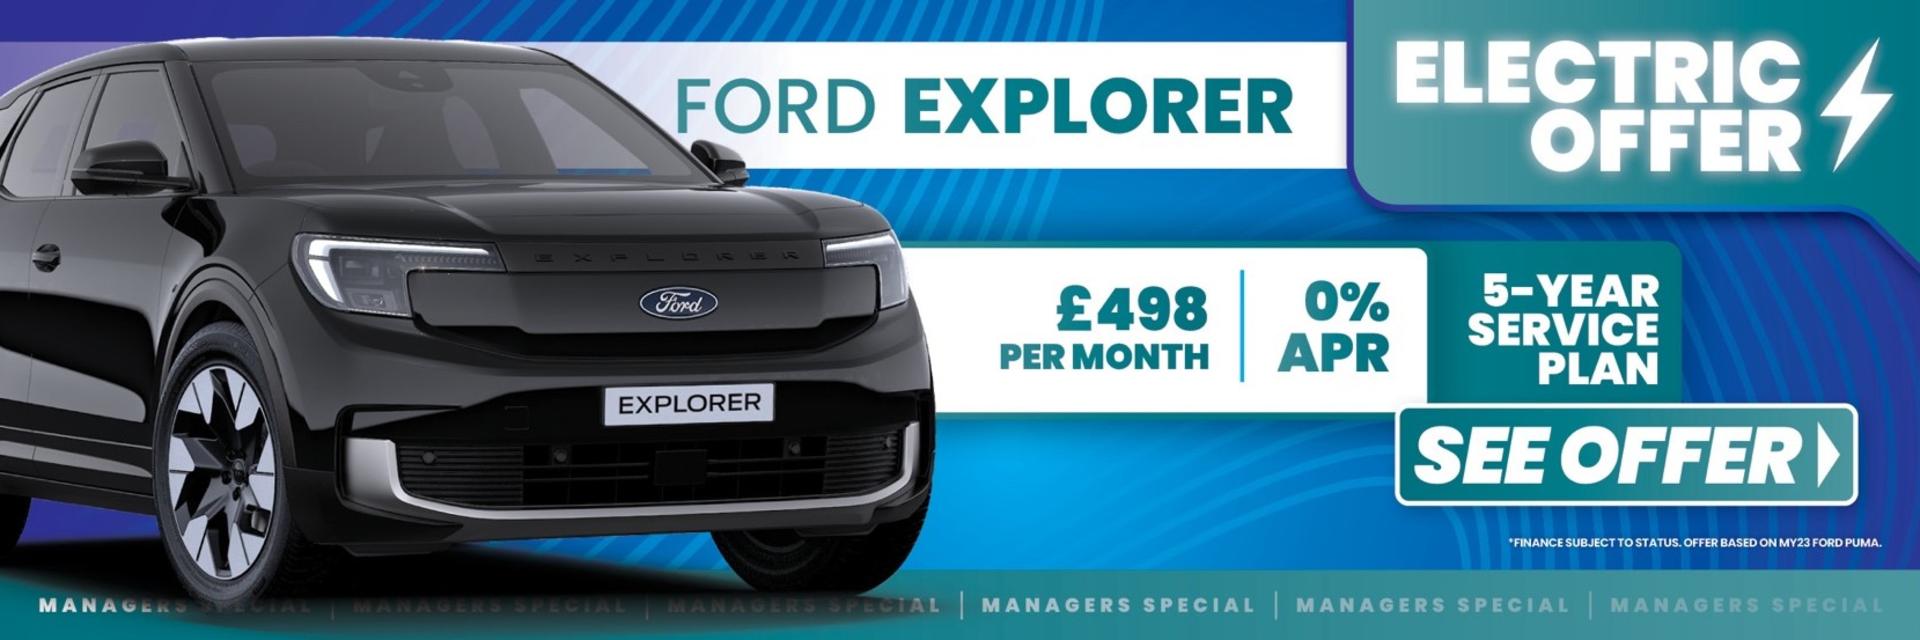 Ford Explorer Q3 Offer